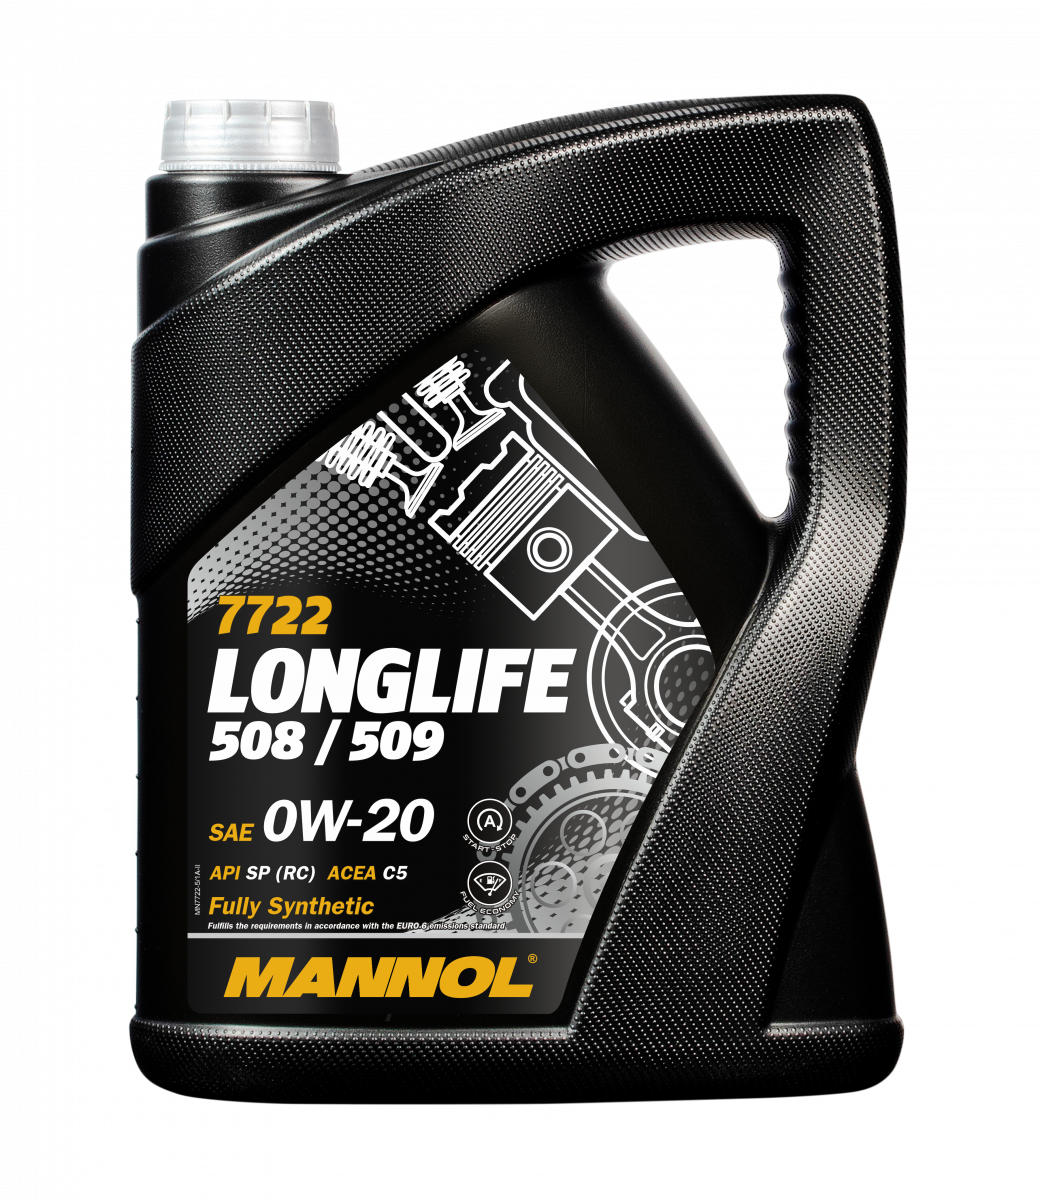 Mannol - 7722 Longlife 508/509 0W-20 5L Engine Oil